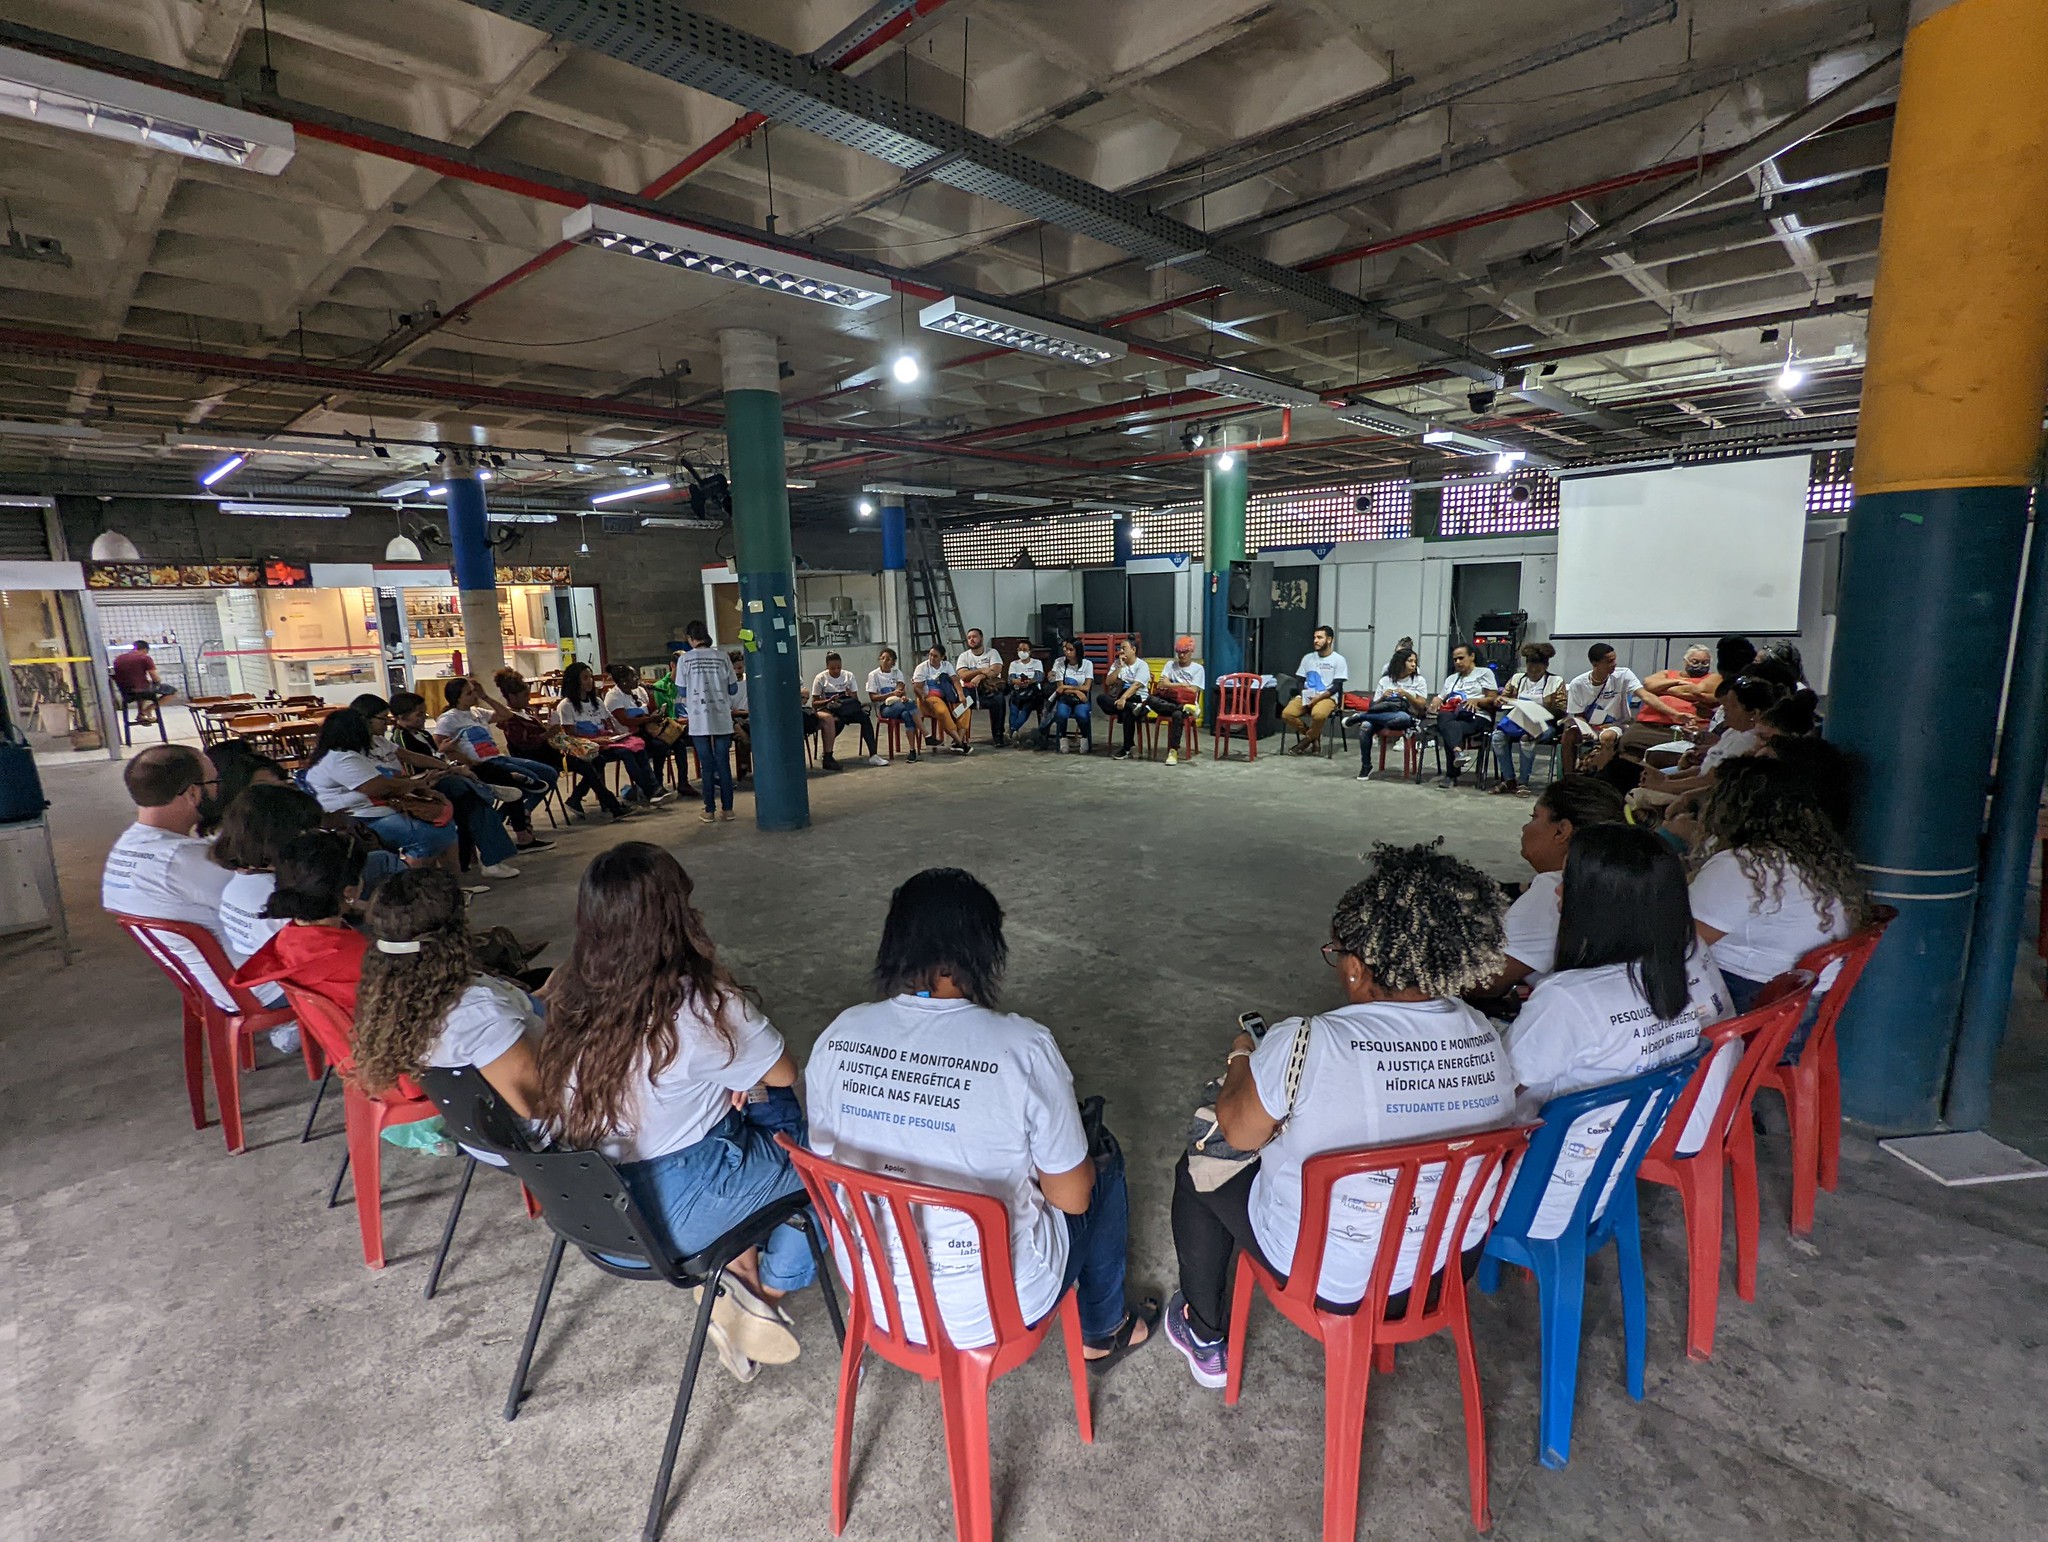 Curso "Pesquisando e Monitorando Justiça Hídrica e Energética nas Favelas", na SOS Providência. Foto: Luiza de Andrade